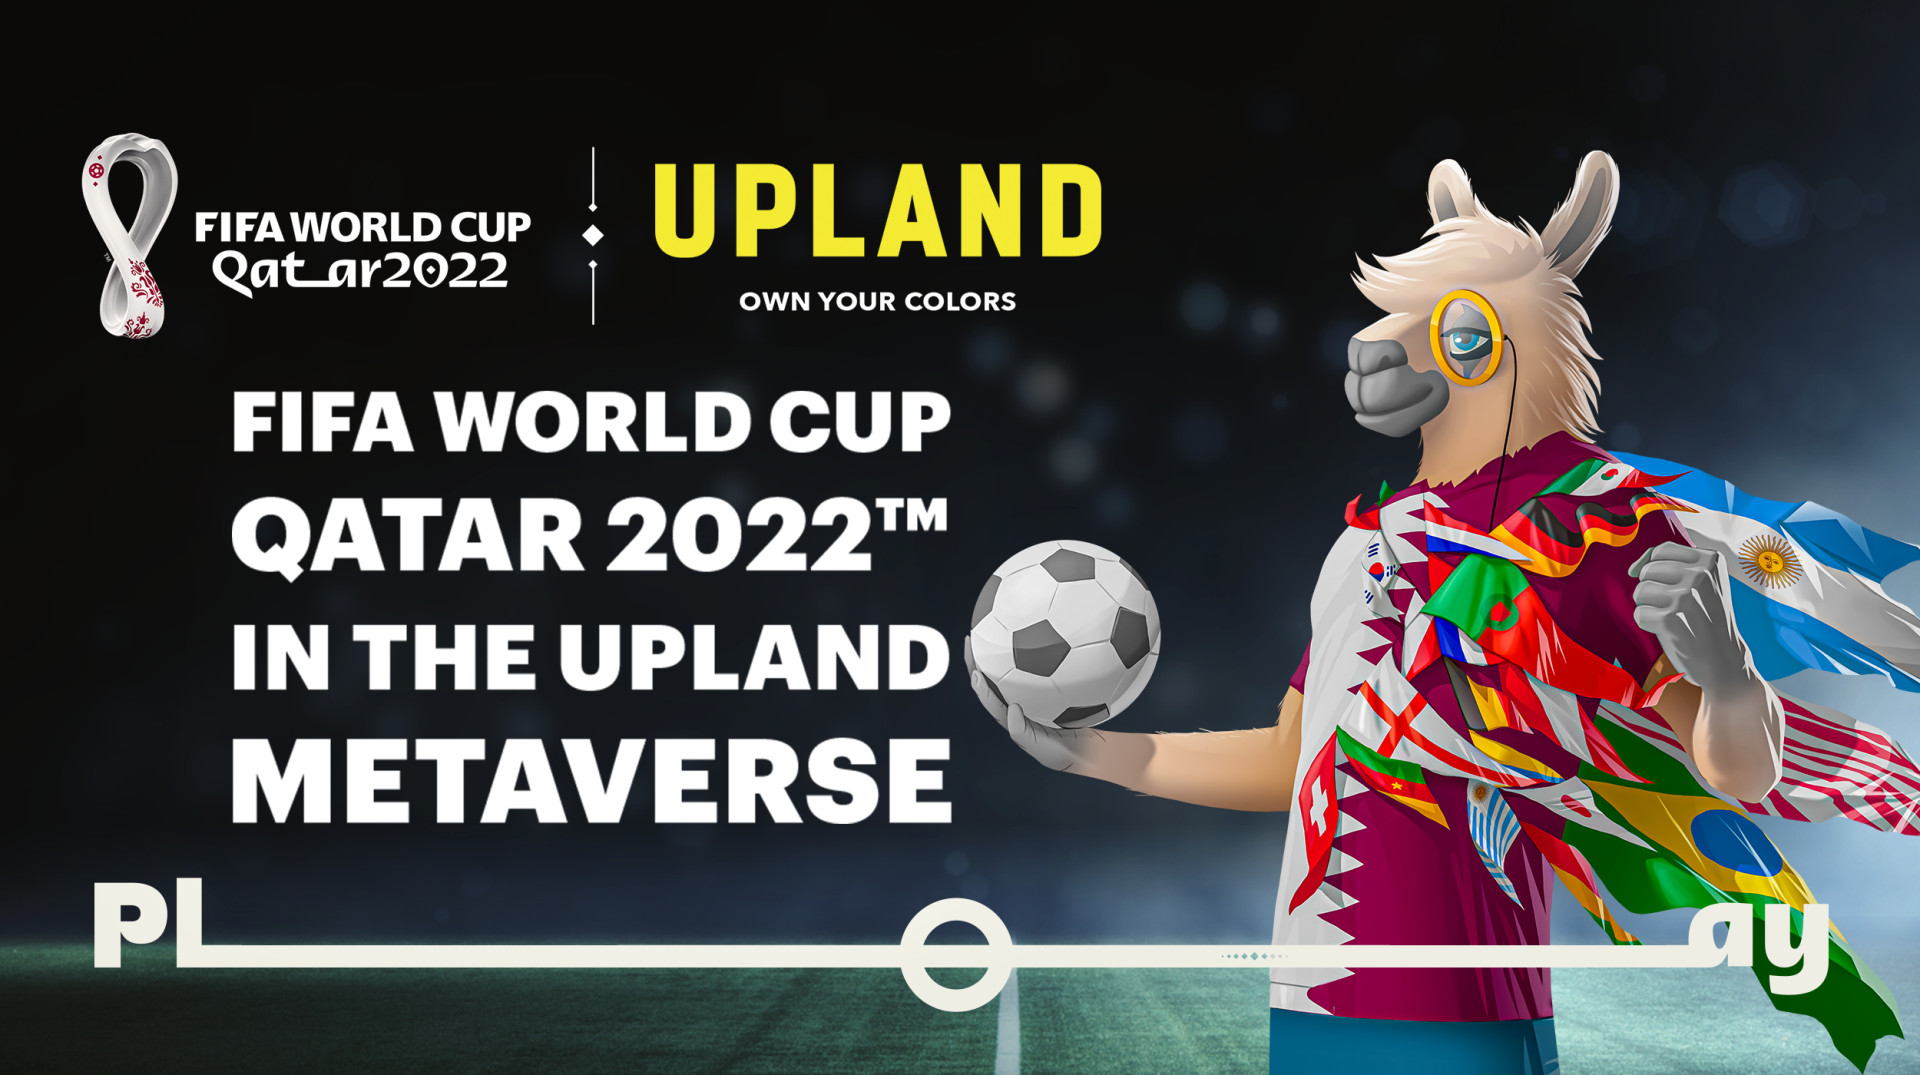 Upland und die FIFA starten offiziell das FIFA World Cup Qatar 2022™-Erlebnis in The Upland Metaverse